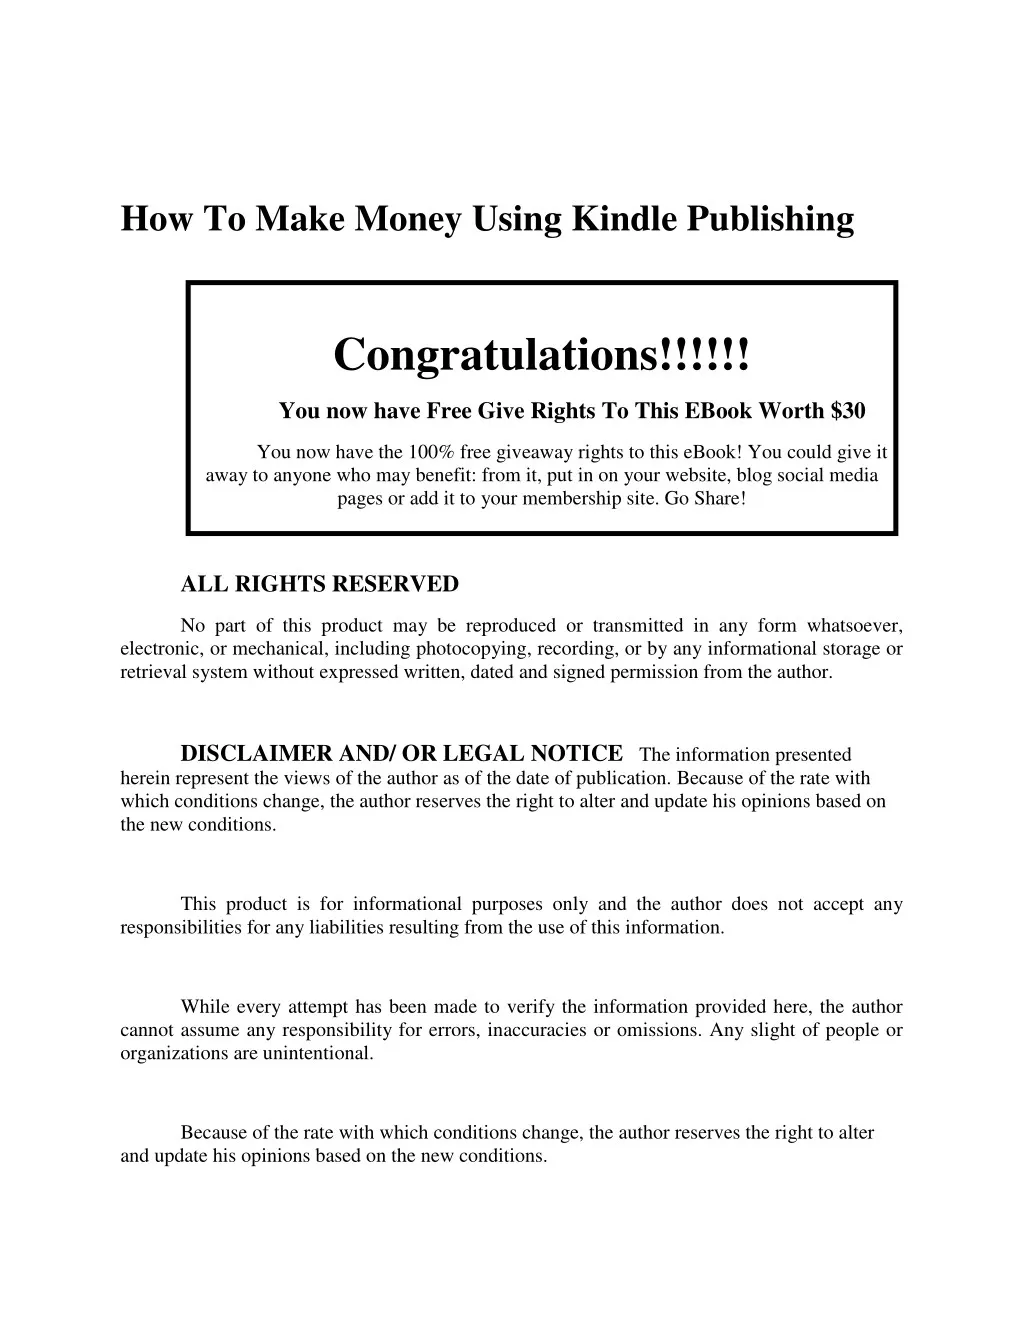 how to make money using kindle publishing